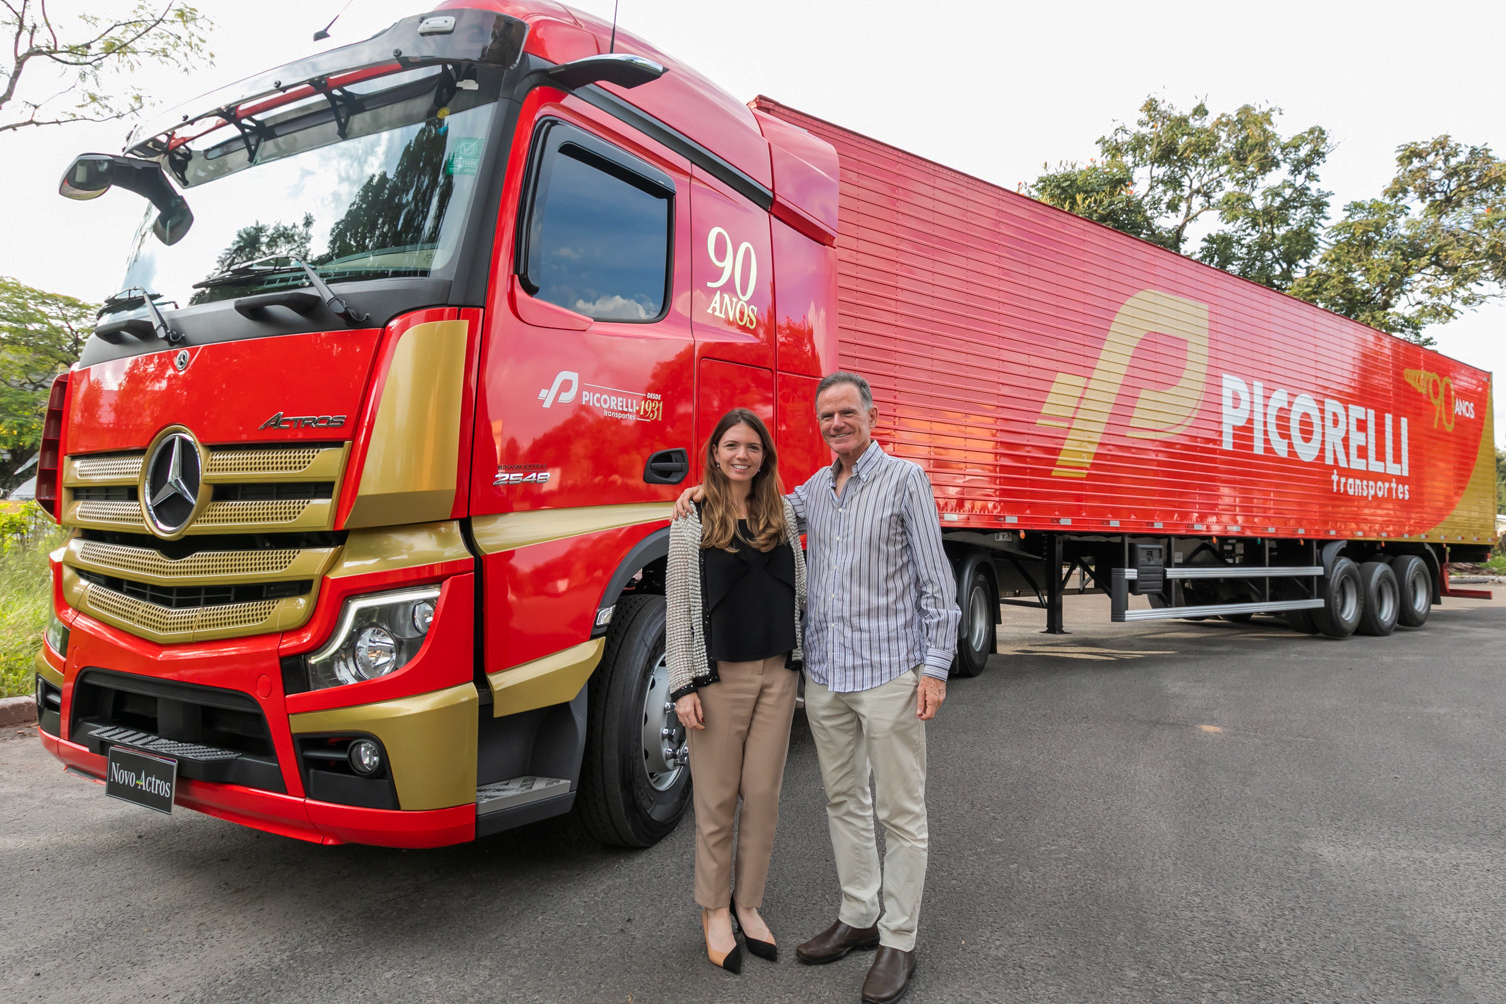 Picorelli Transportes completa 90 anos e personaliza caminhão 